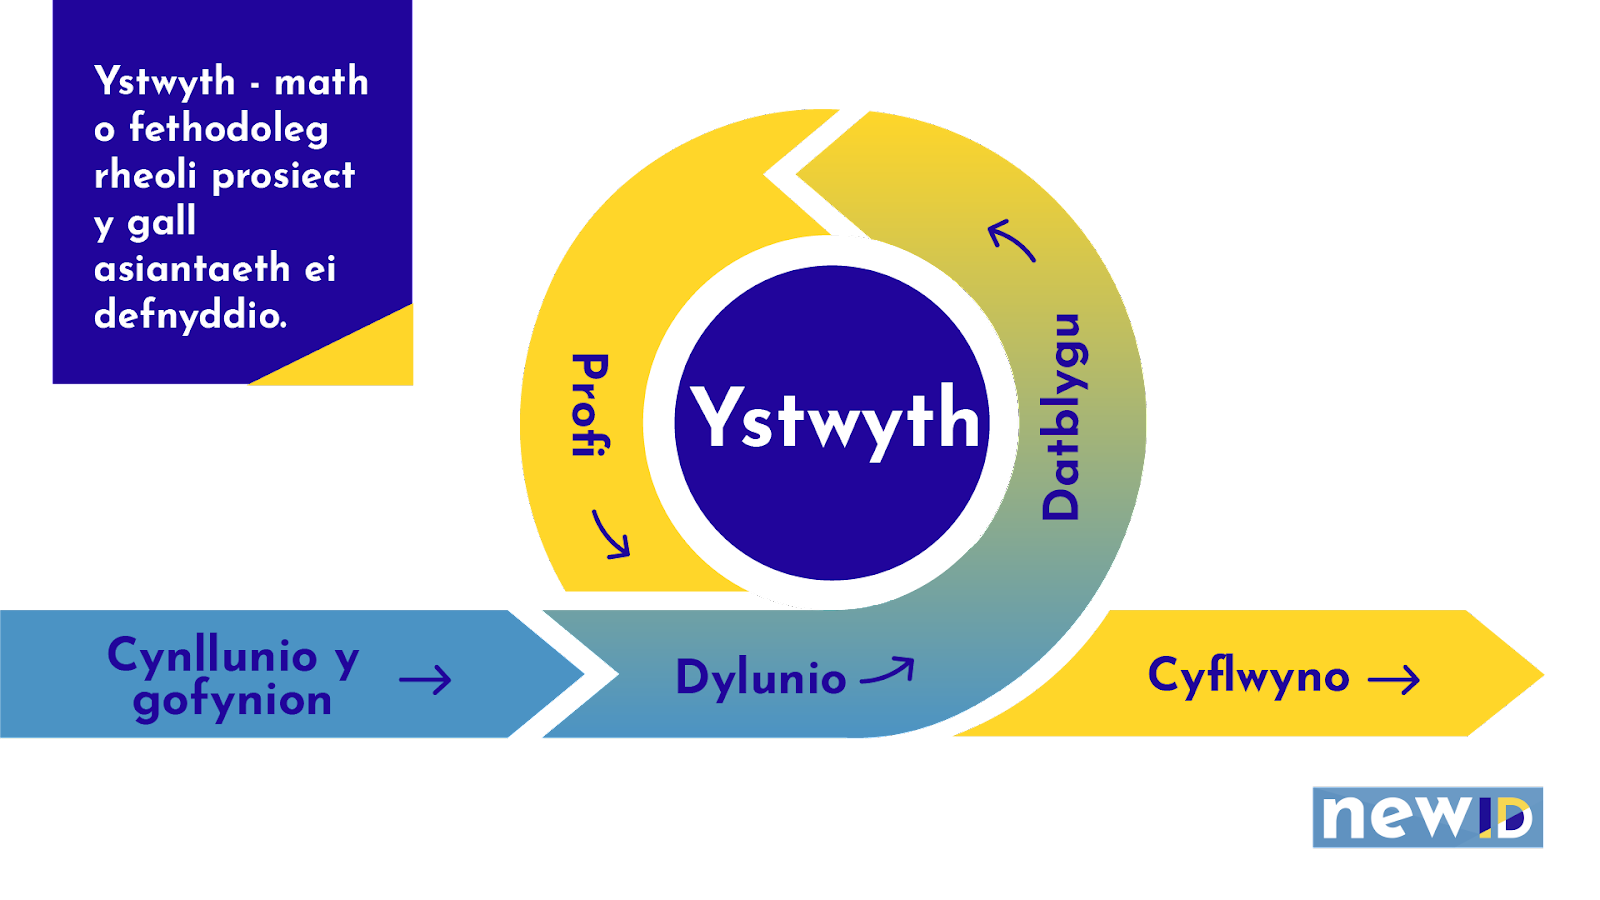 Diagram yn esbonio Ystwyth, fath o fethodoleg rheoli prosiect y gall asiantaeth ei defnyddio. Y 5 cam o Ystwyth yw, 1. Cynllunio y gofynion, 2. Dylunio, 3. Datblygu, 4. Profi, 5, Cyflwyno.